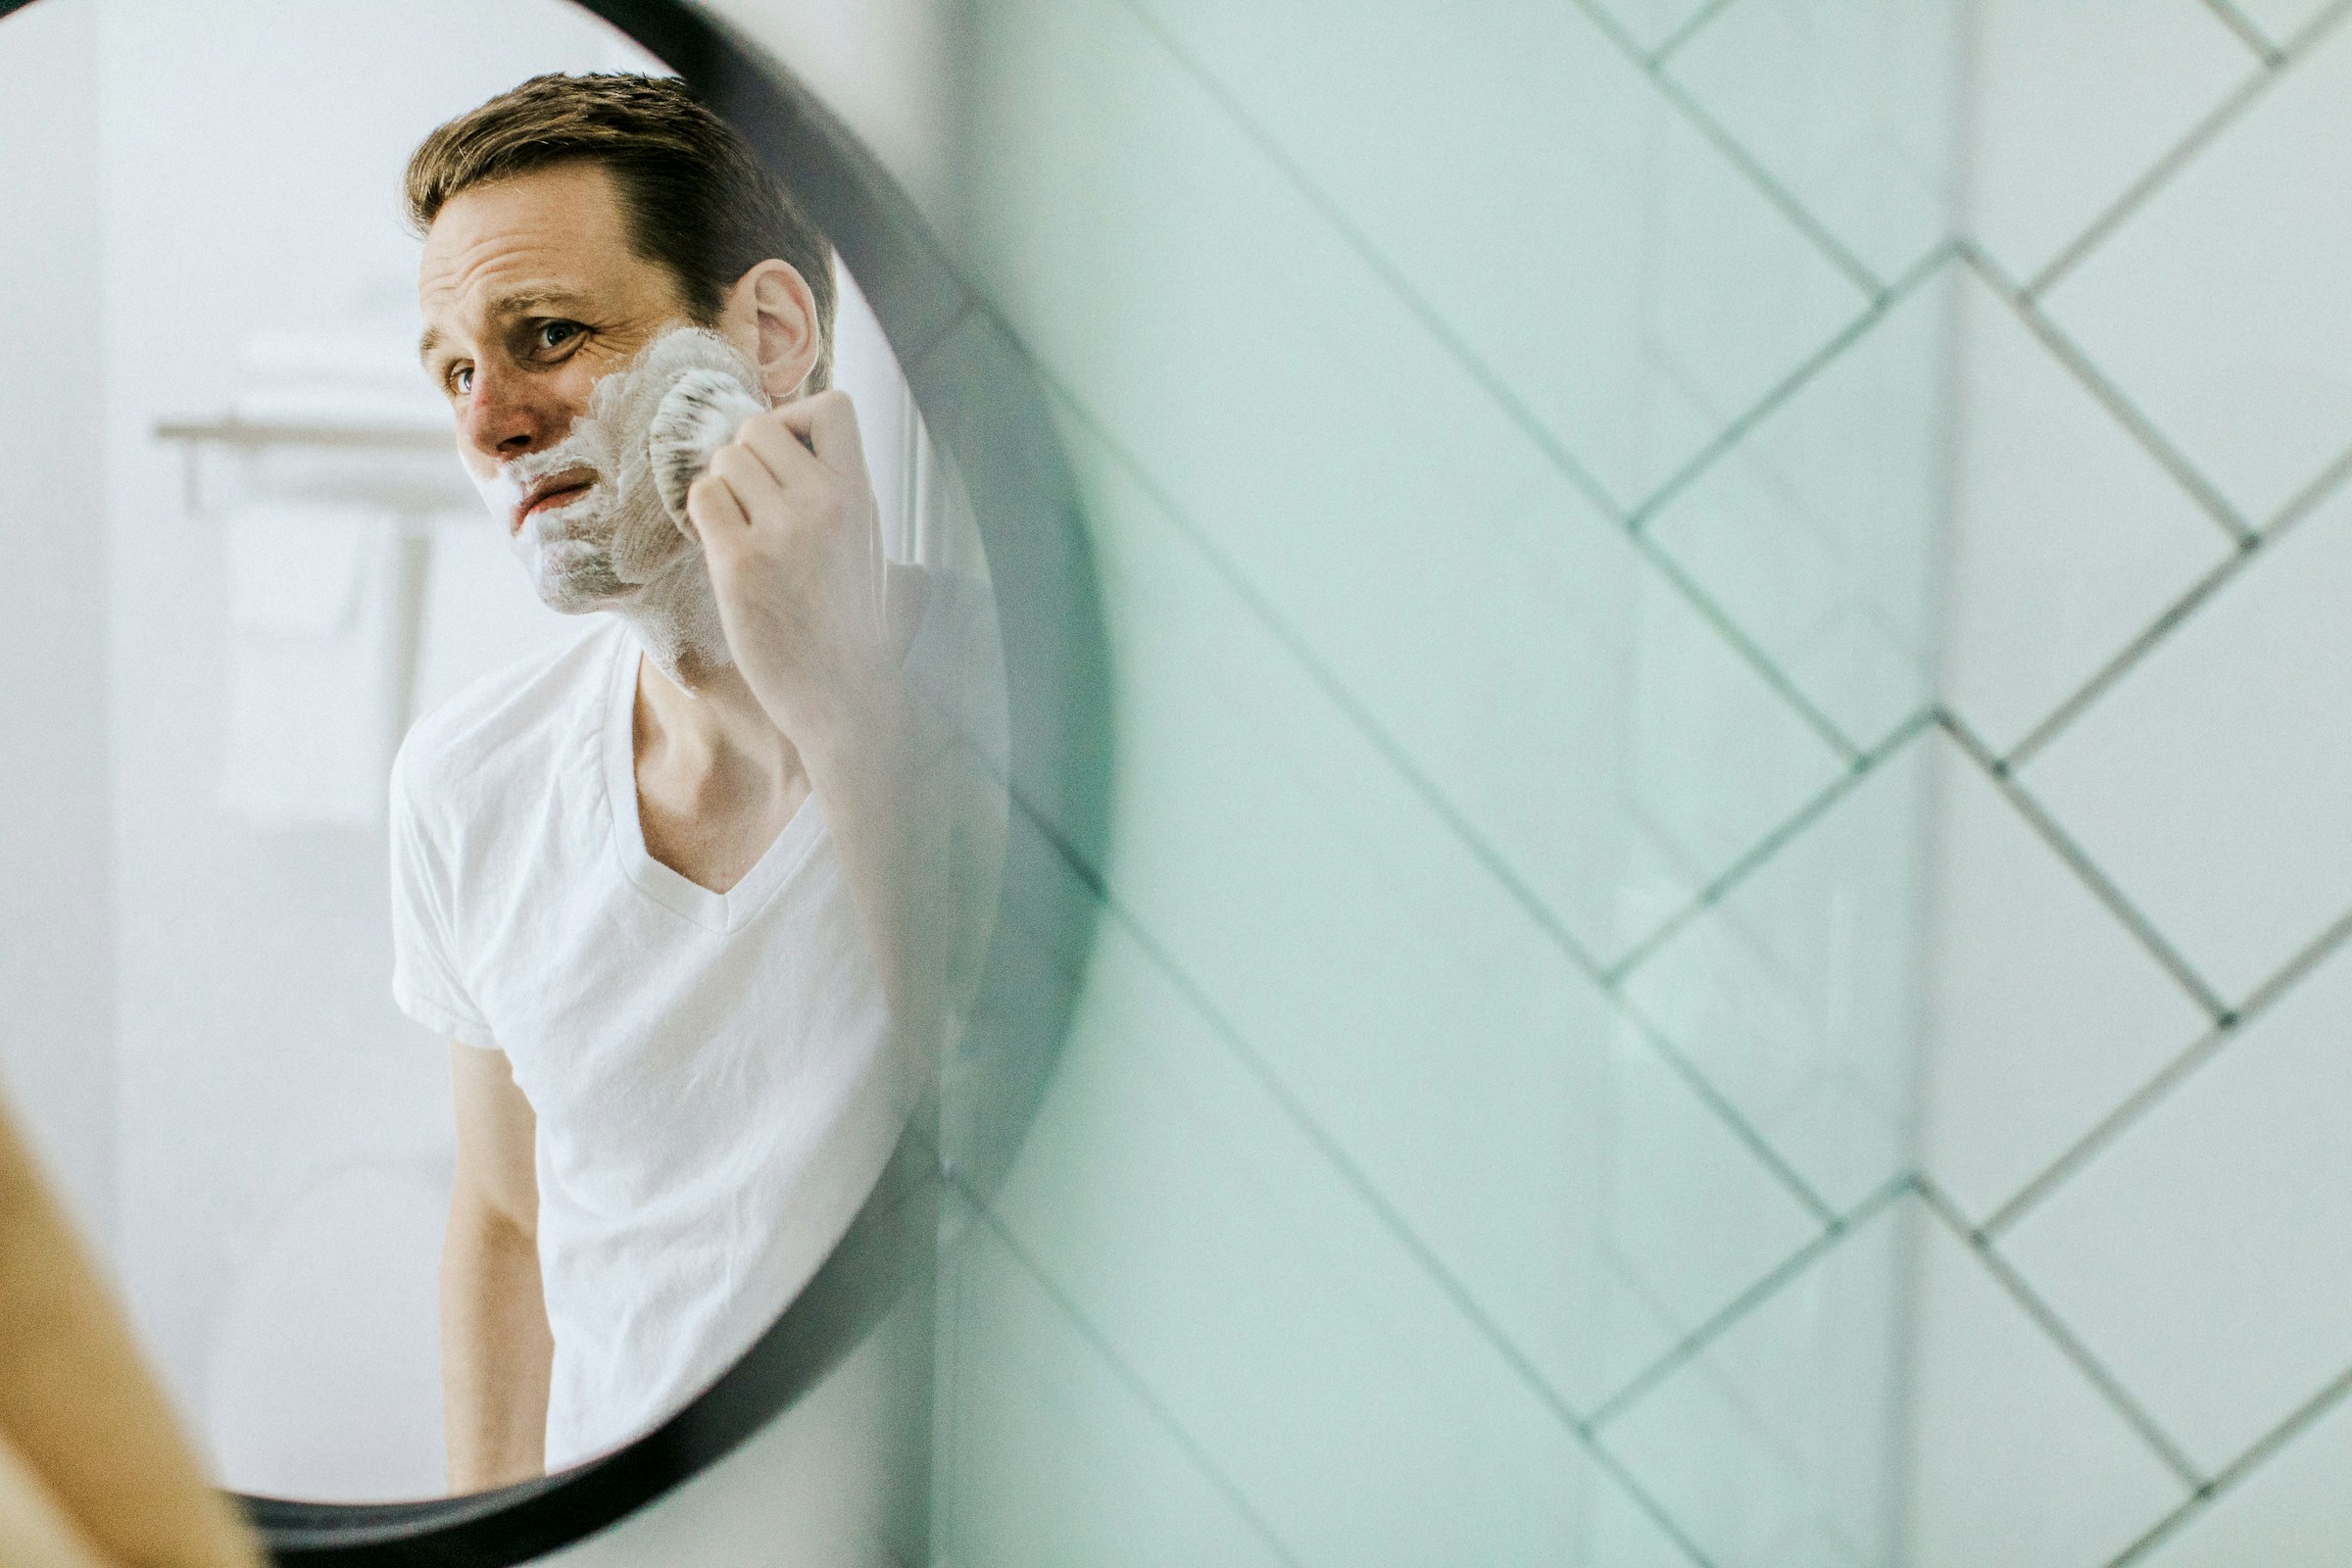 Un homme se rasant dans un miroir | Source : Unsplash